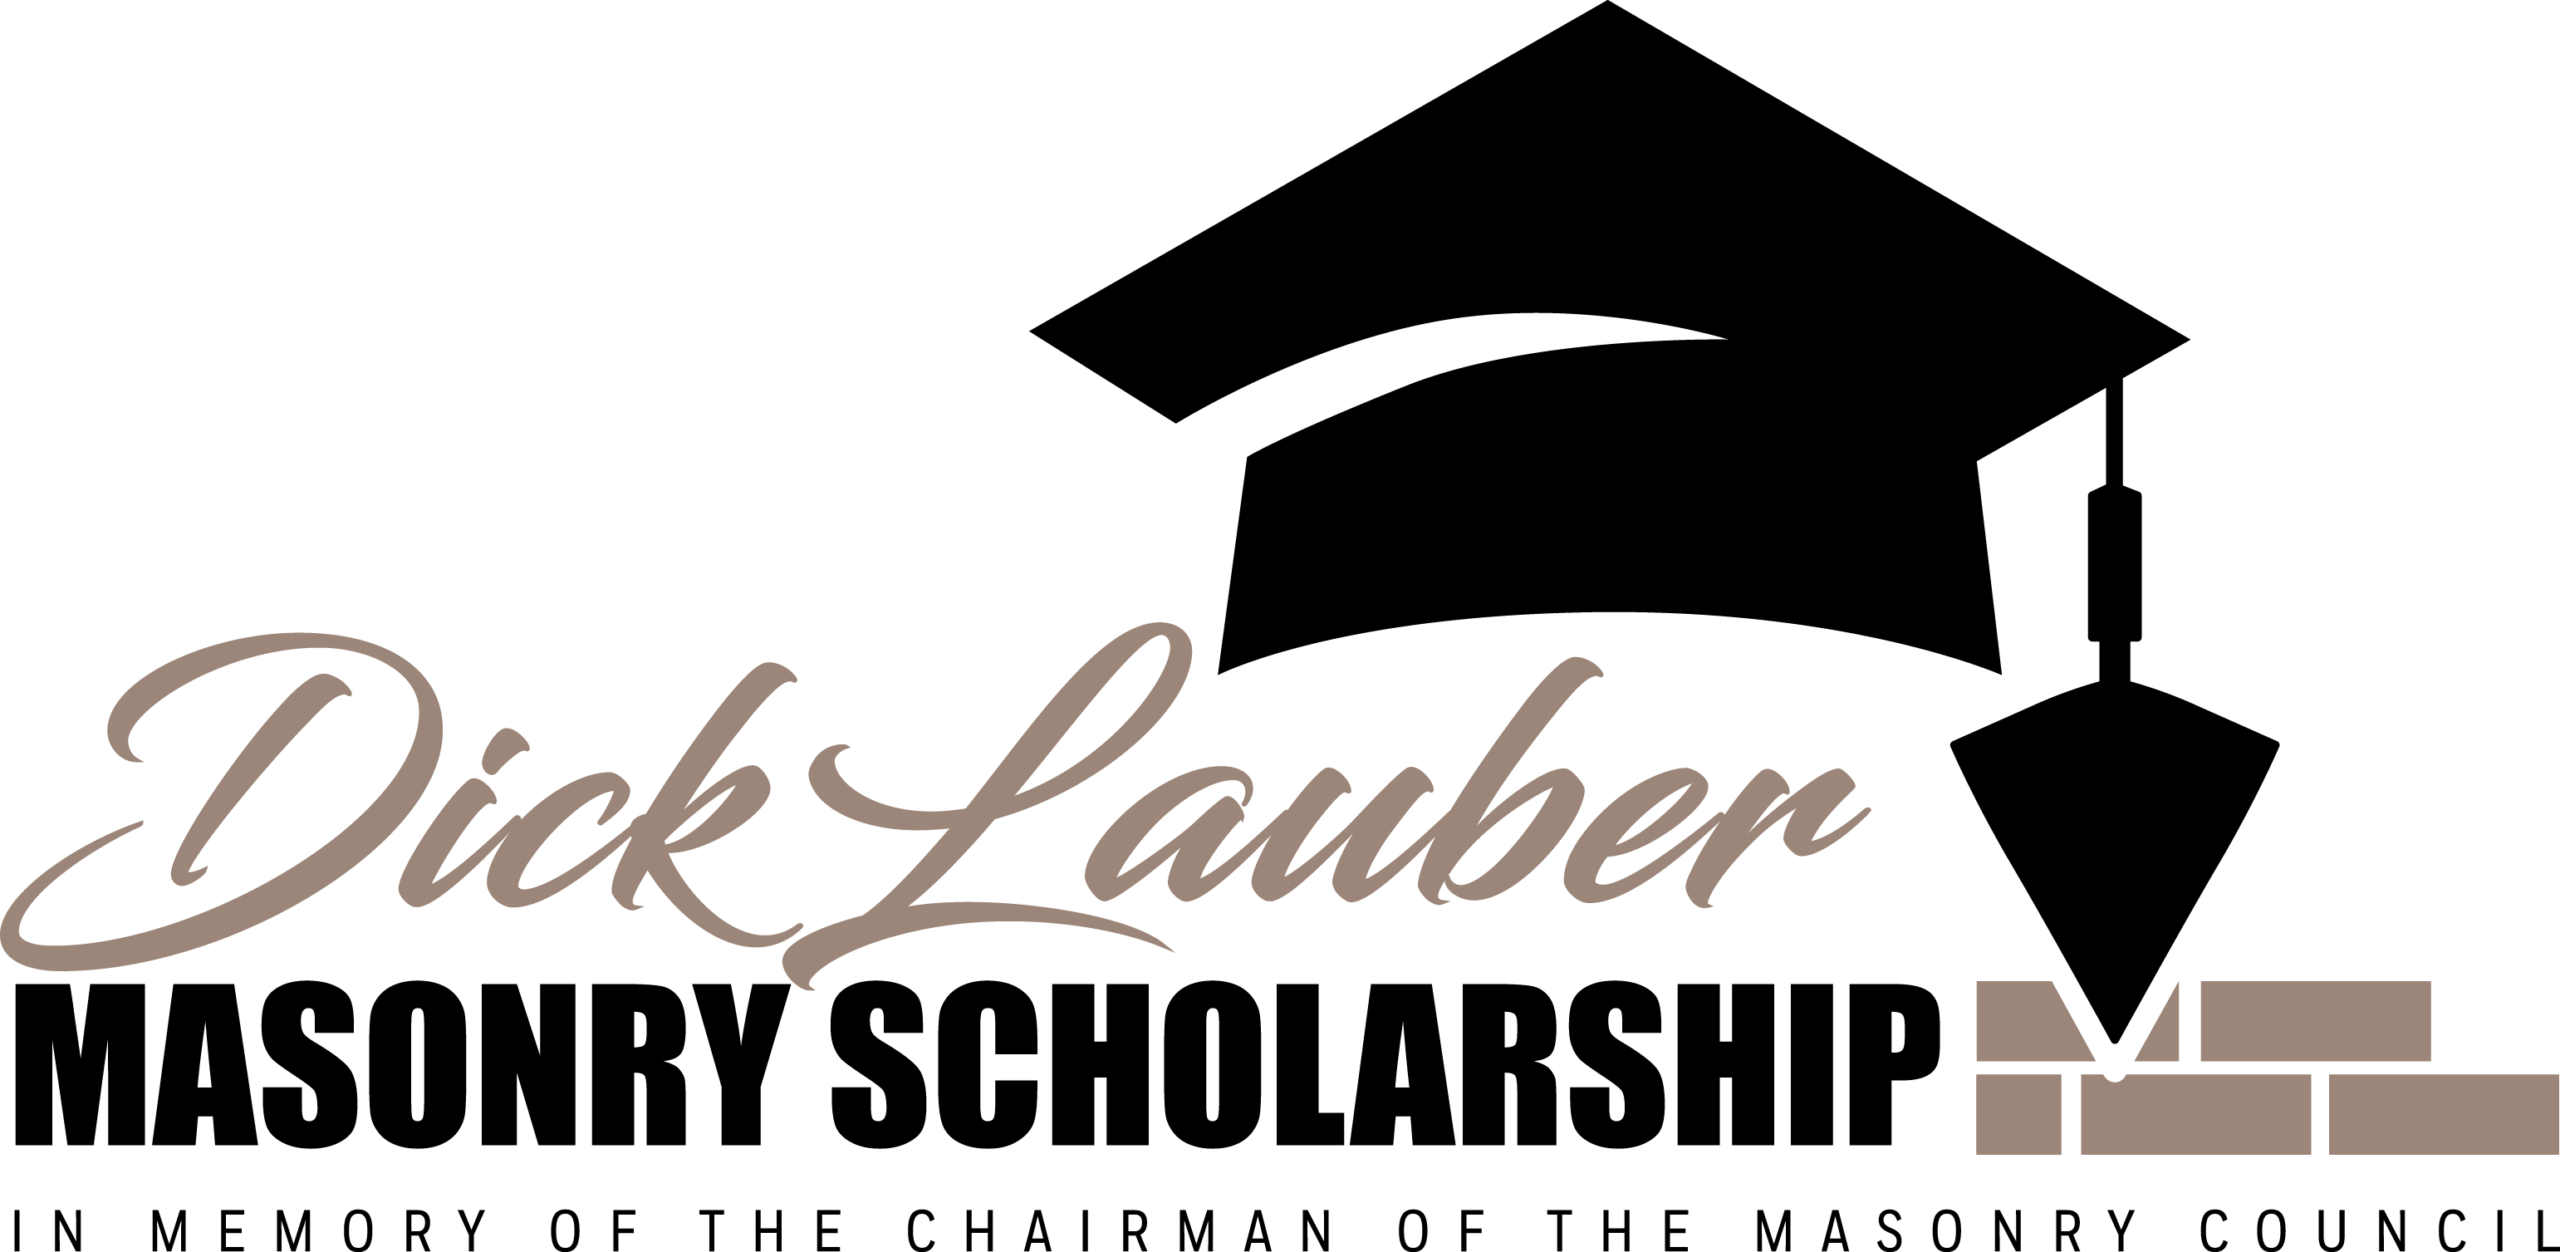 Dick Lauber Masonry Scholarship Logo FNL